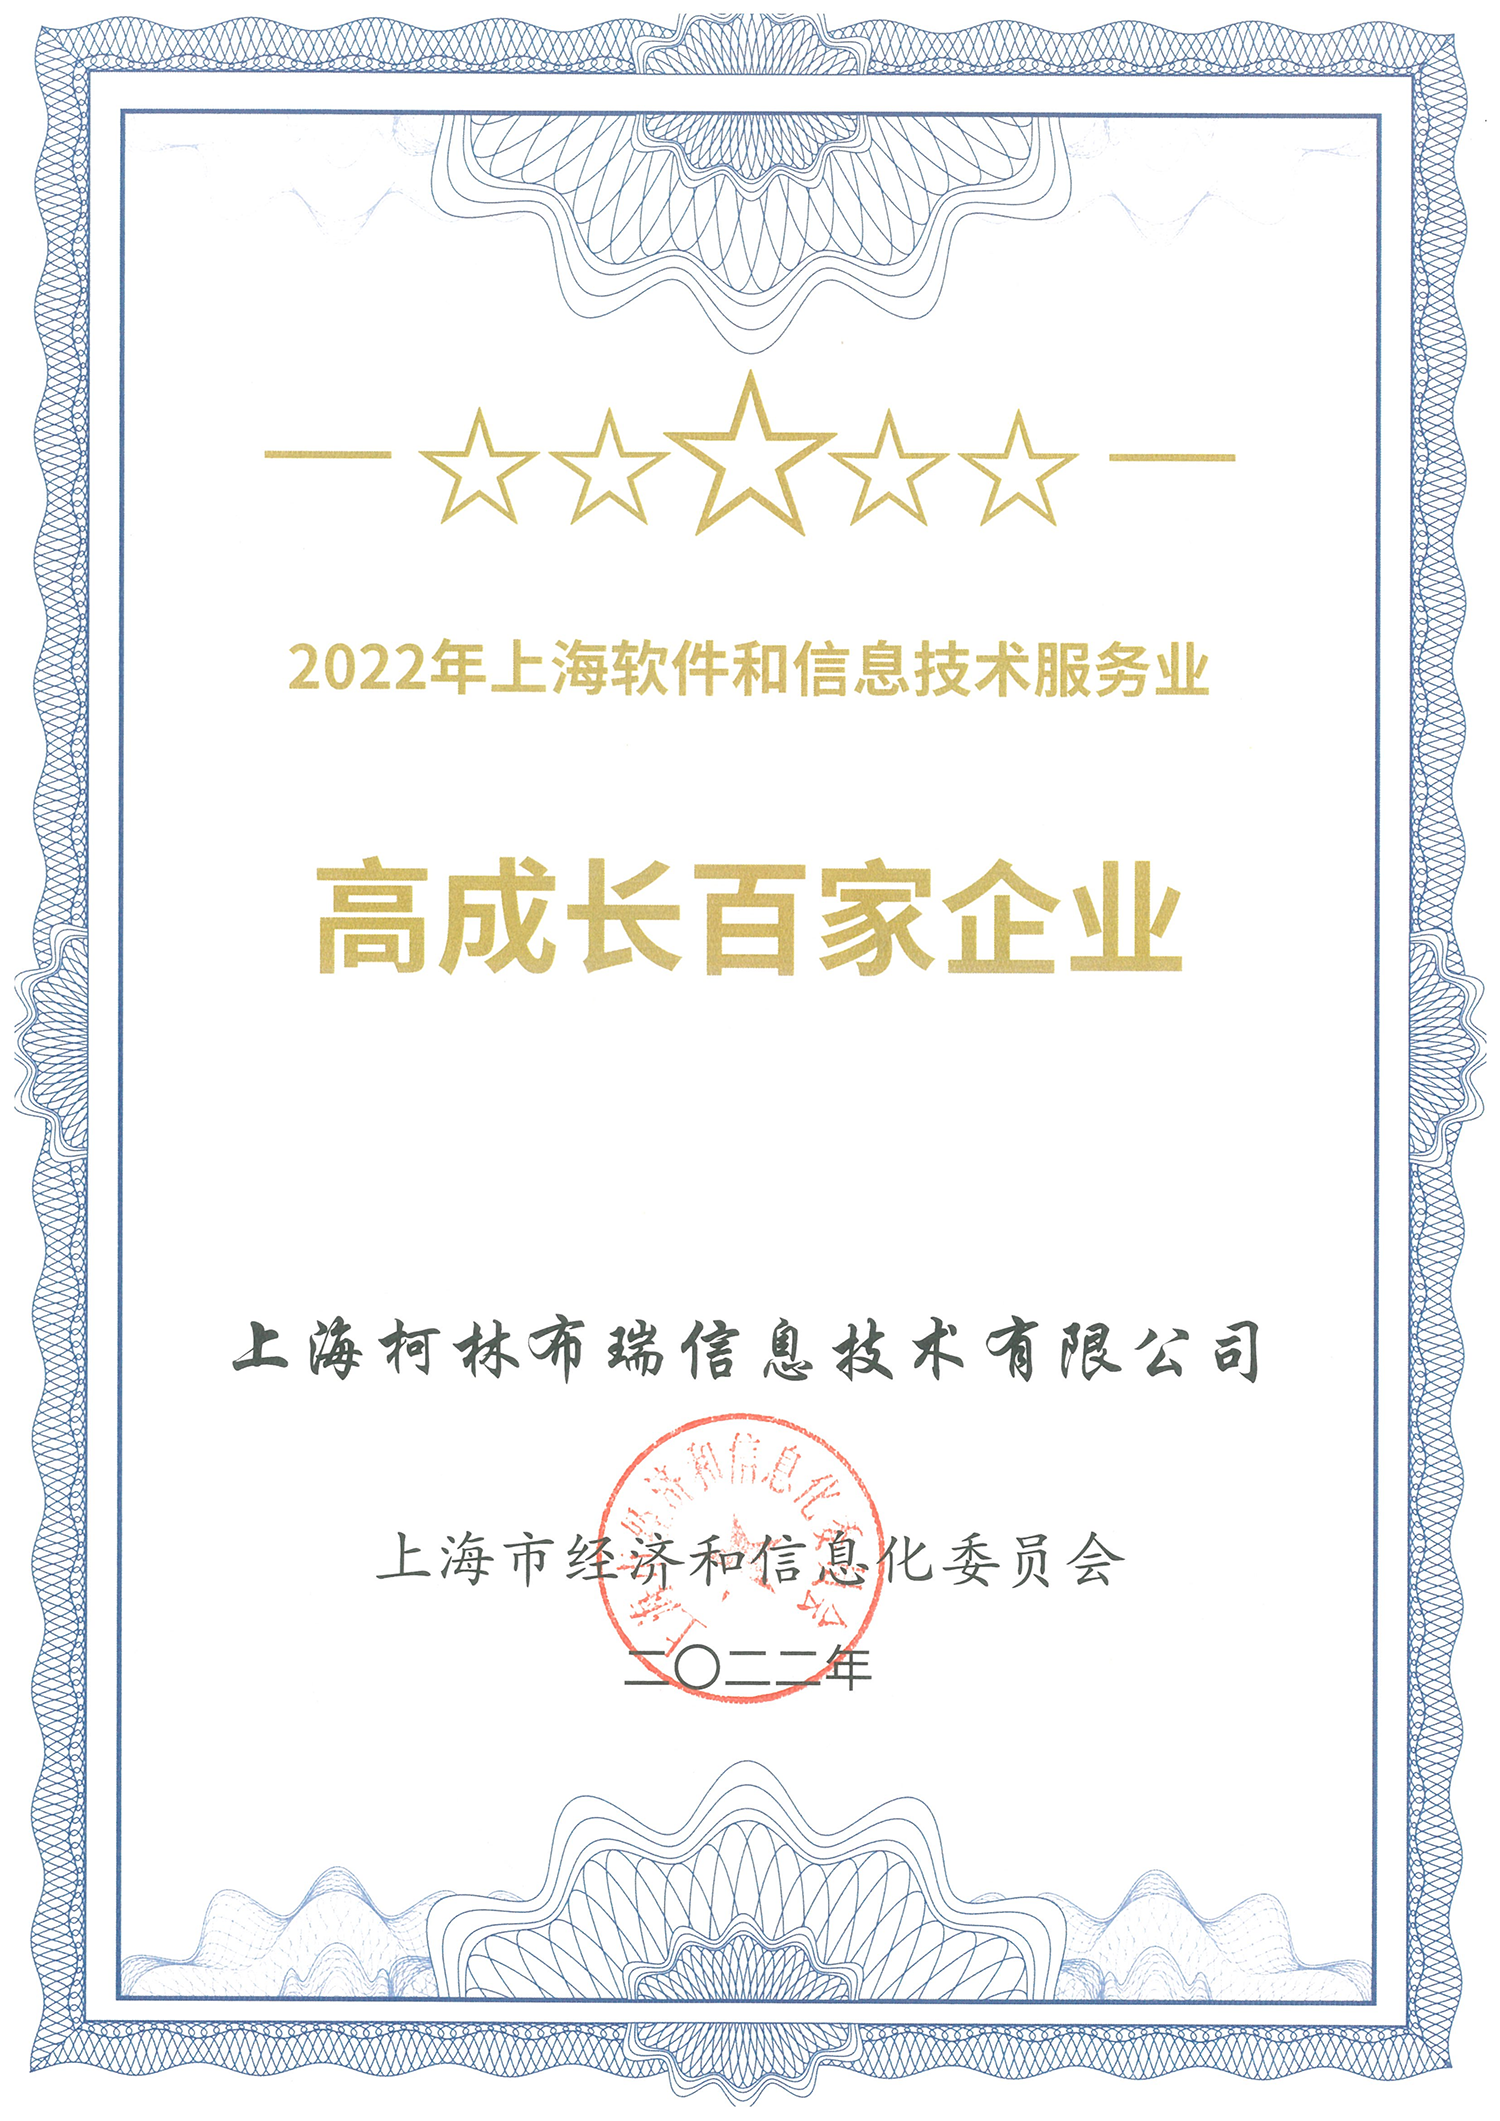 CBRY2022-004-2022年上海软件和信息技术服务业高成长百家企业_00-ps.png